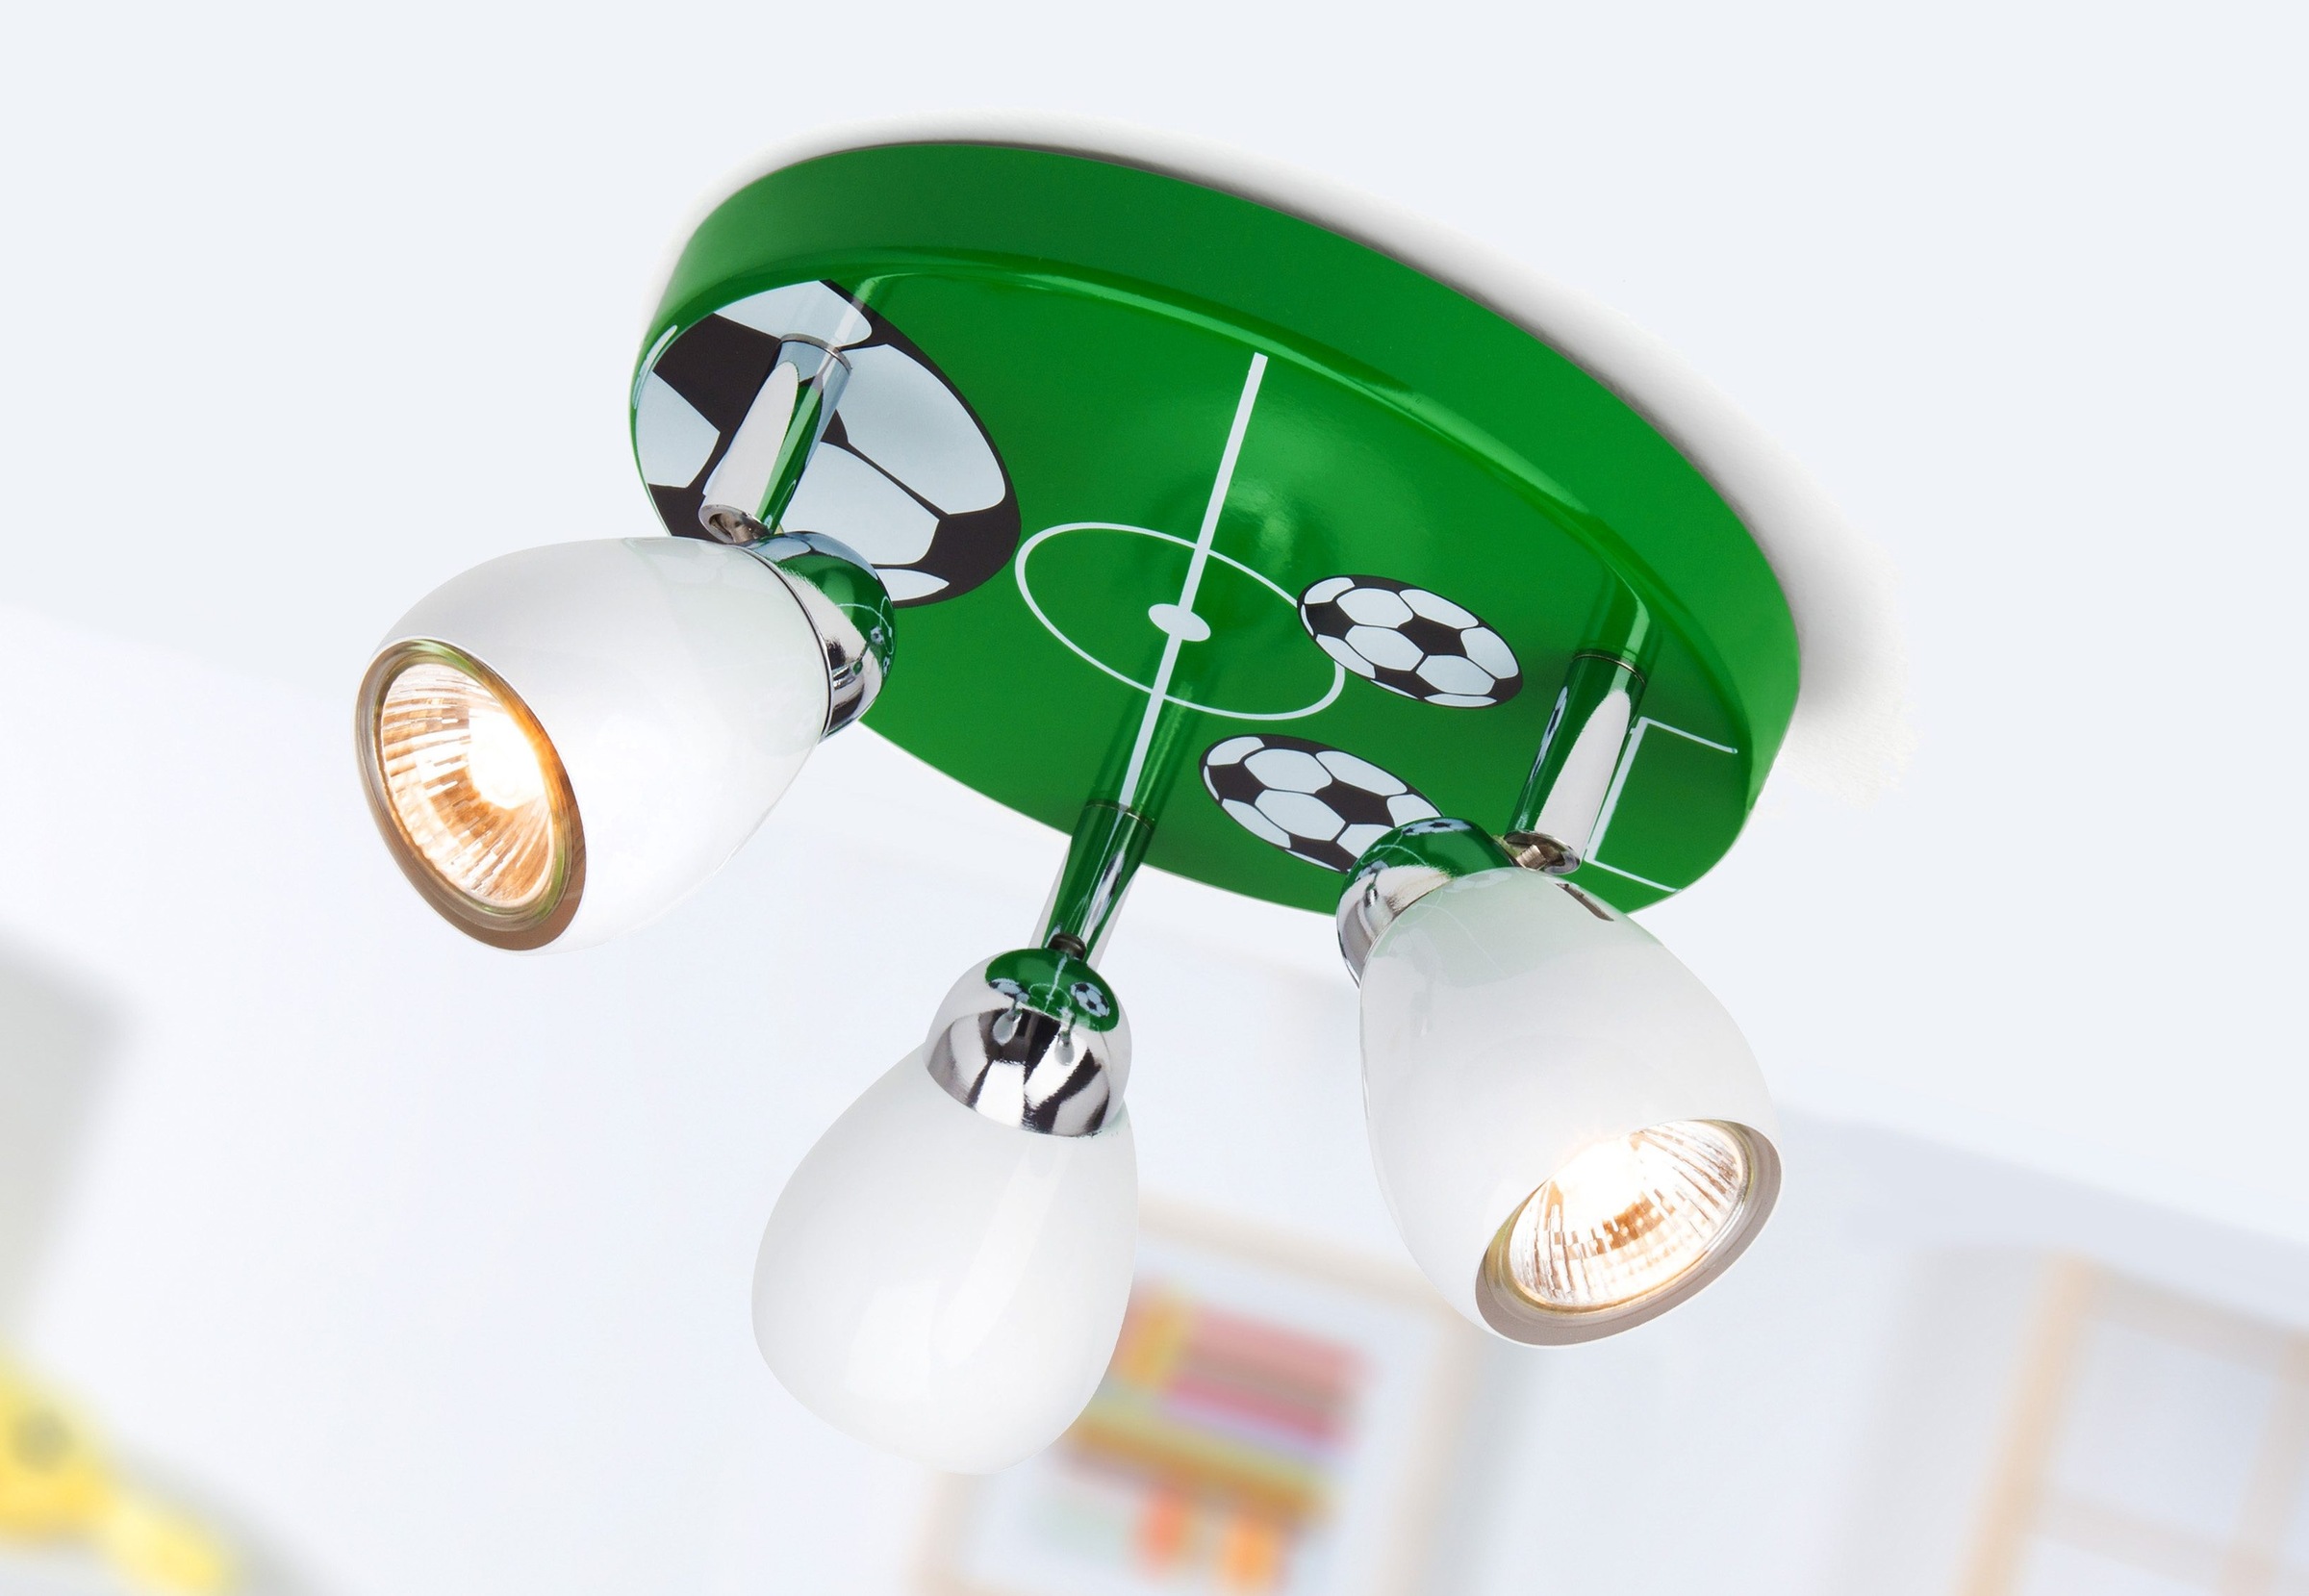 Brilliant LED Deckenstrahler »SOCCER«, 3 flammig-flammig, Spotrondell weiß/grün-schwarz-weiß, 3 x GU10 max. 3W, 11cm Höhe